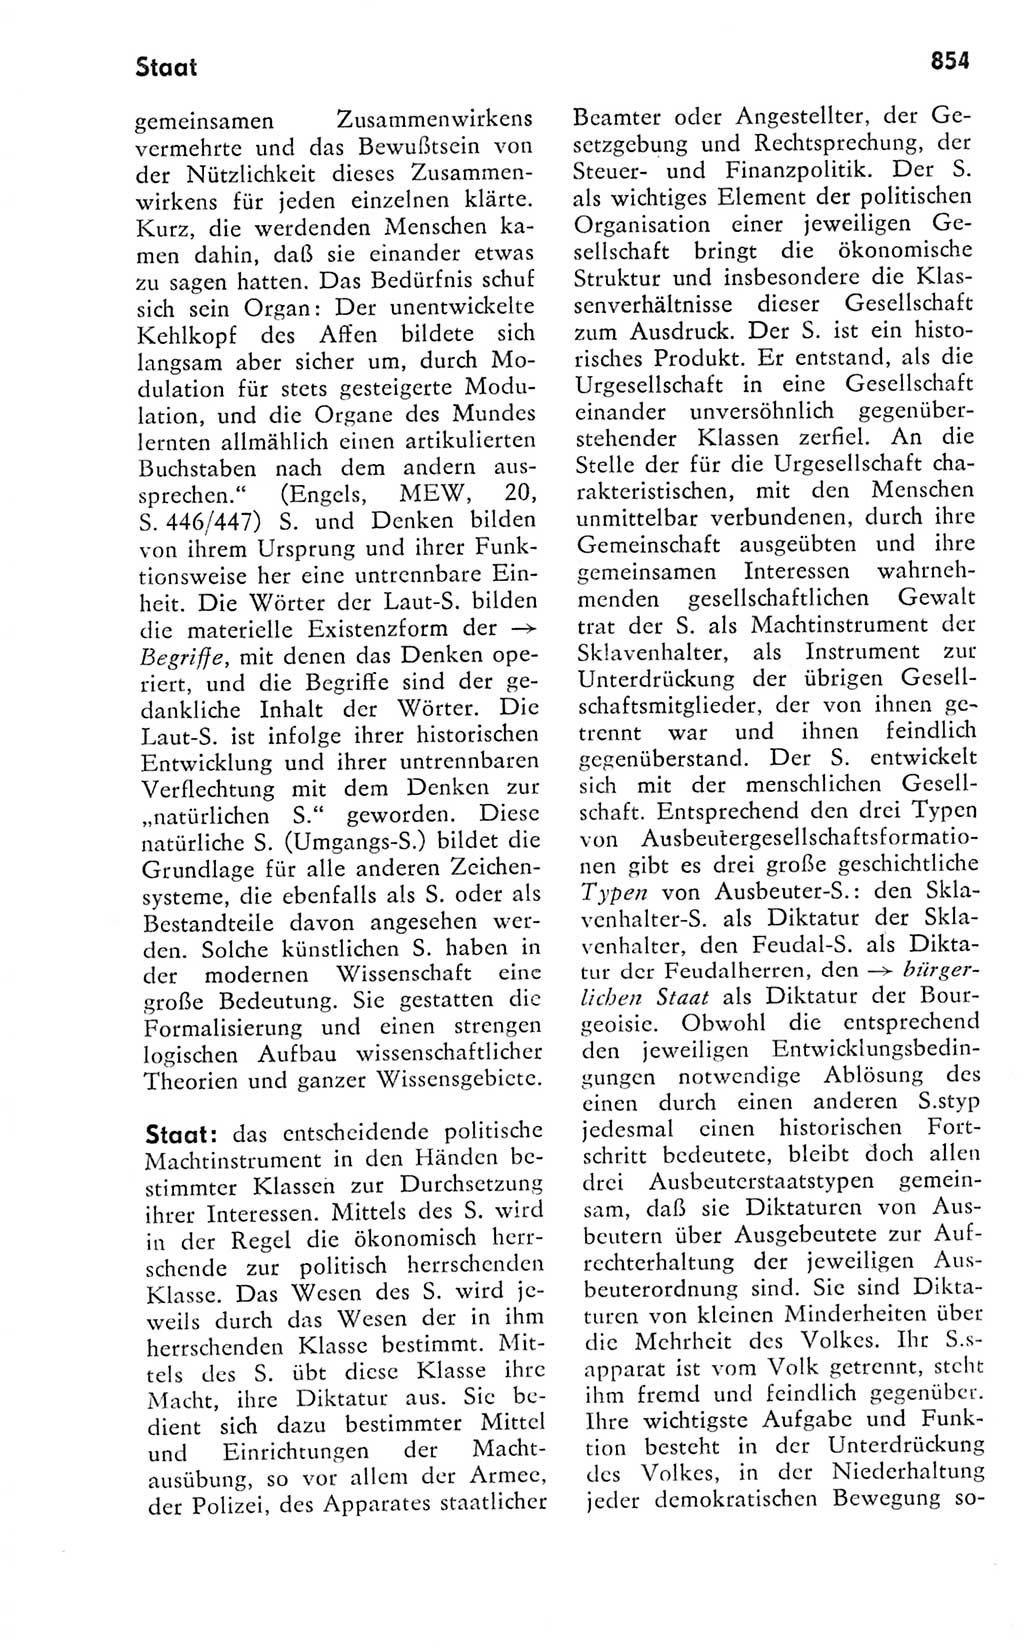 Kleines politisches Wörterbuch [Deutsche Demokratische Republik (DDR)] 1978, Seite 854 (Kl. pol. Wb. DDR 1978, S. 854)